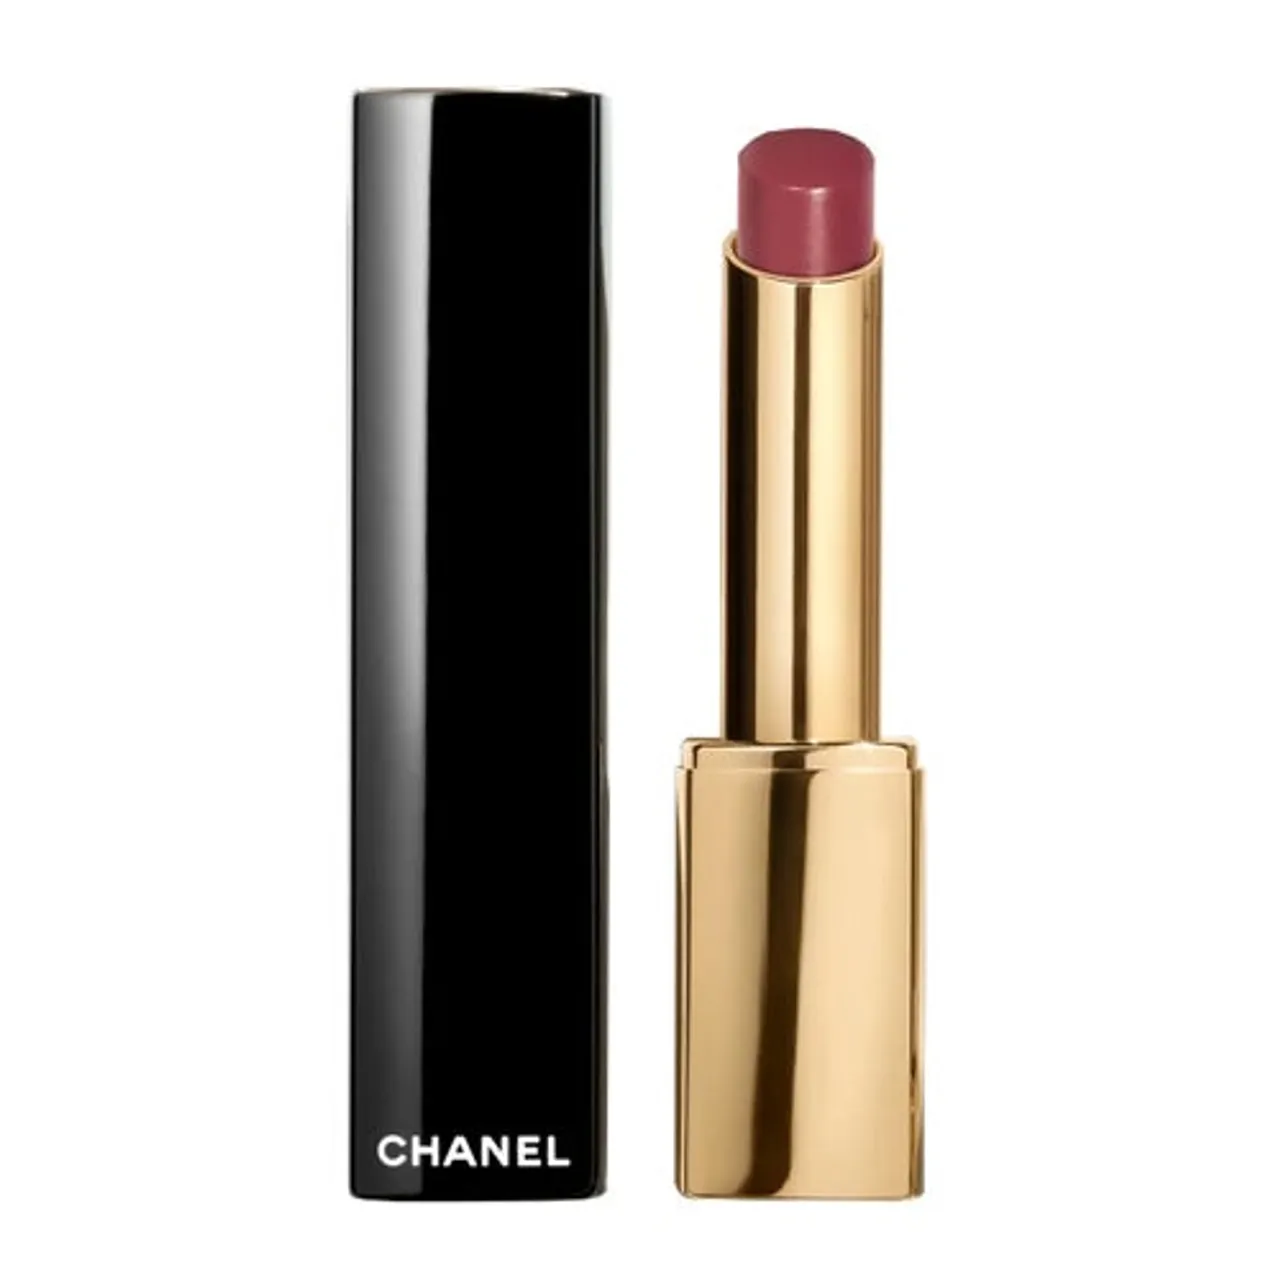 Chanel Rouge Allure L'extrait Lipstick Refillable 824 2 gram